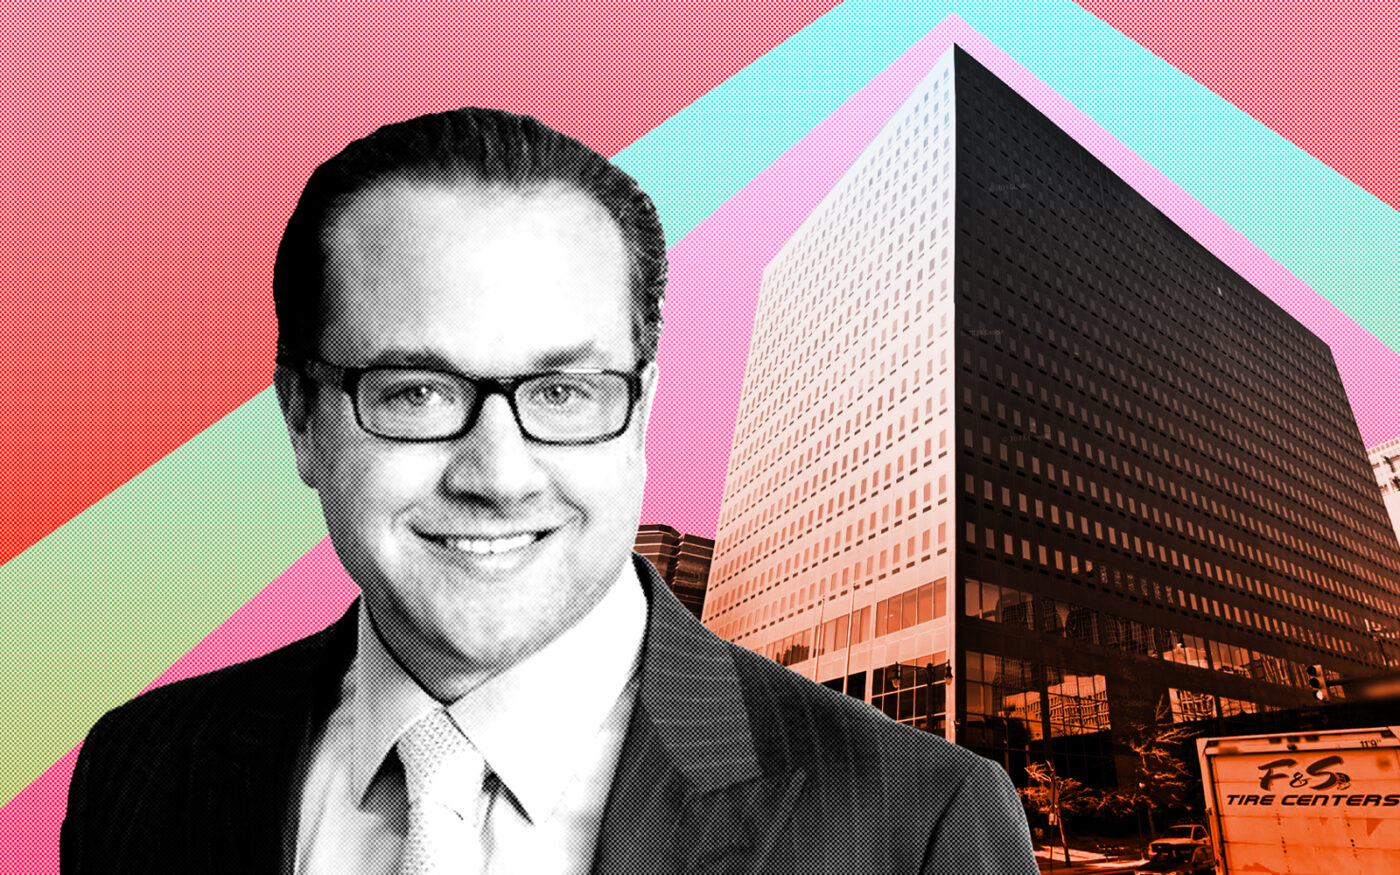 Onyx Equities' Jonathan Shultz and 2 Gateway Center in Newark